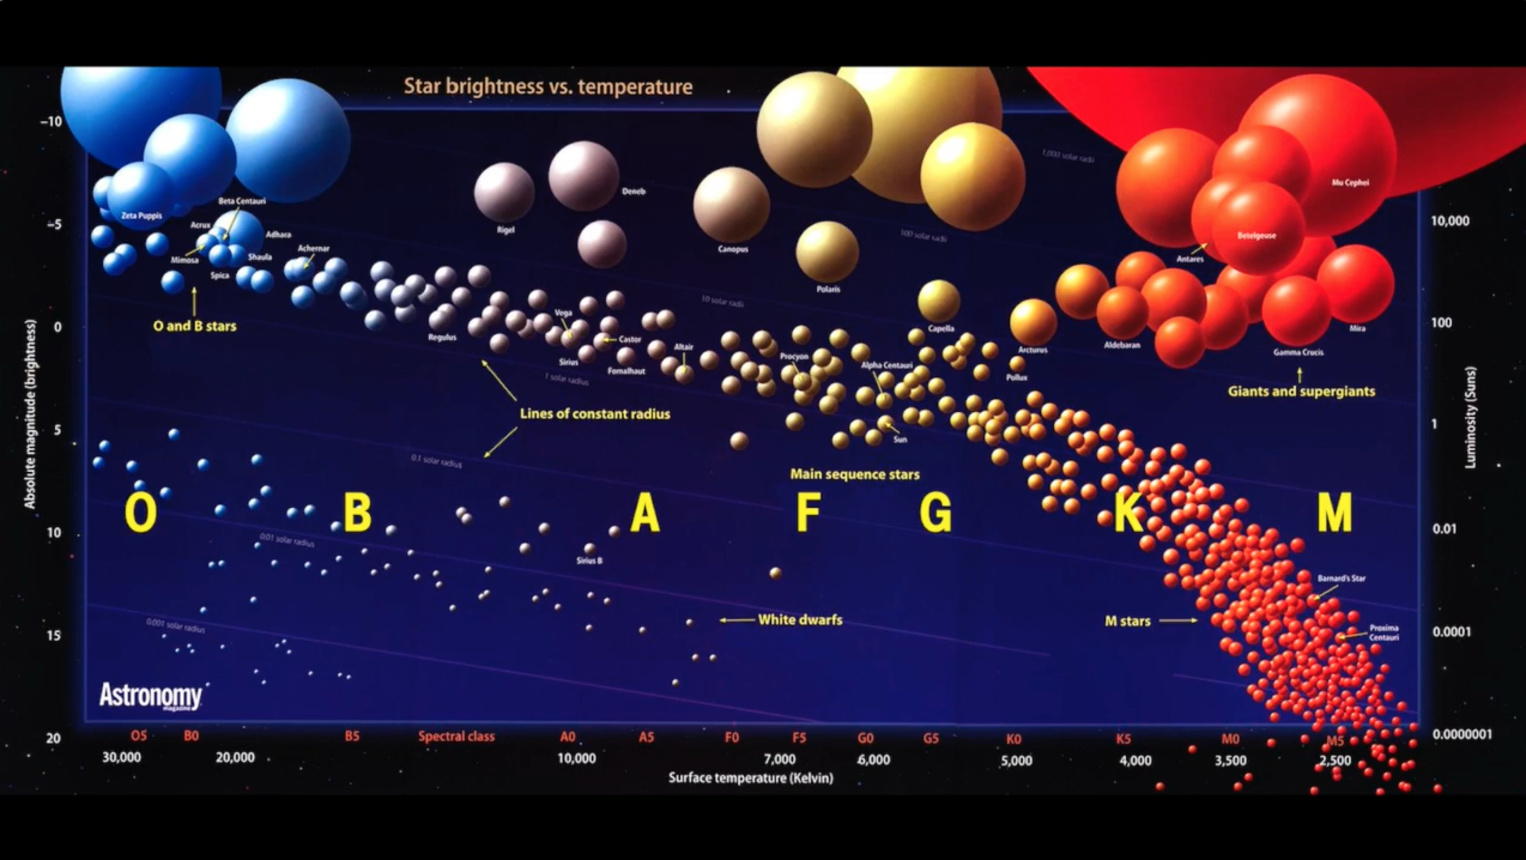 Hertzsprung-Russell-secuencia-principal-estrellas-clsificacion.jpg